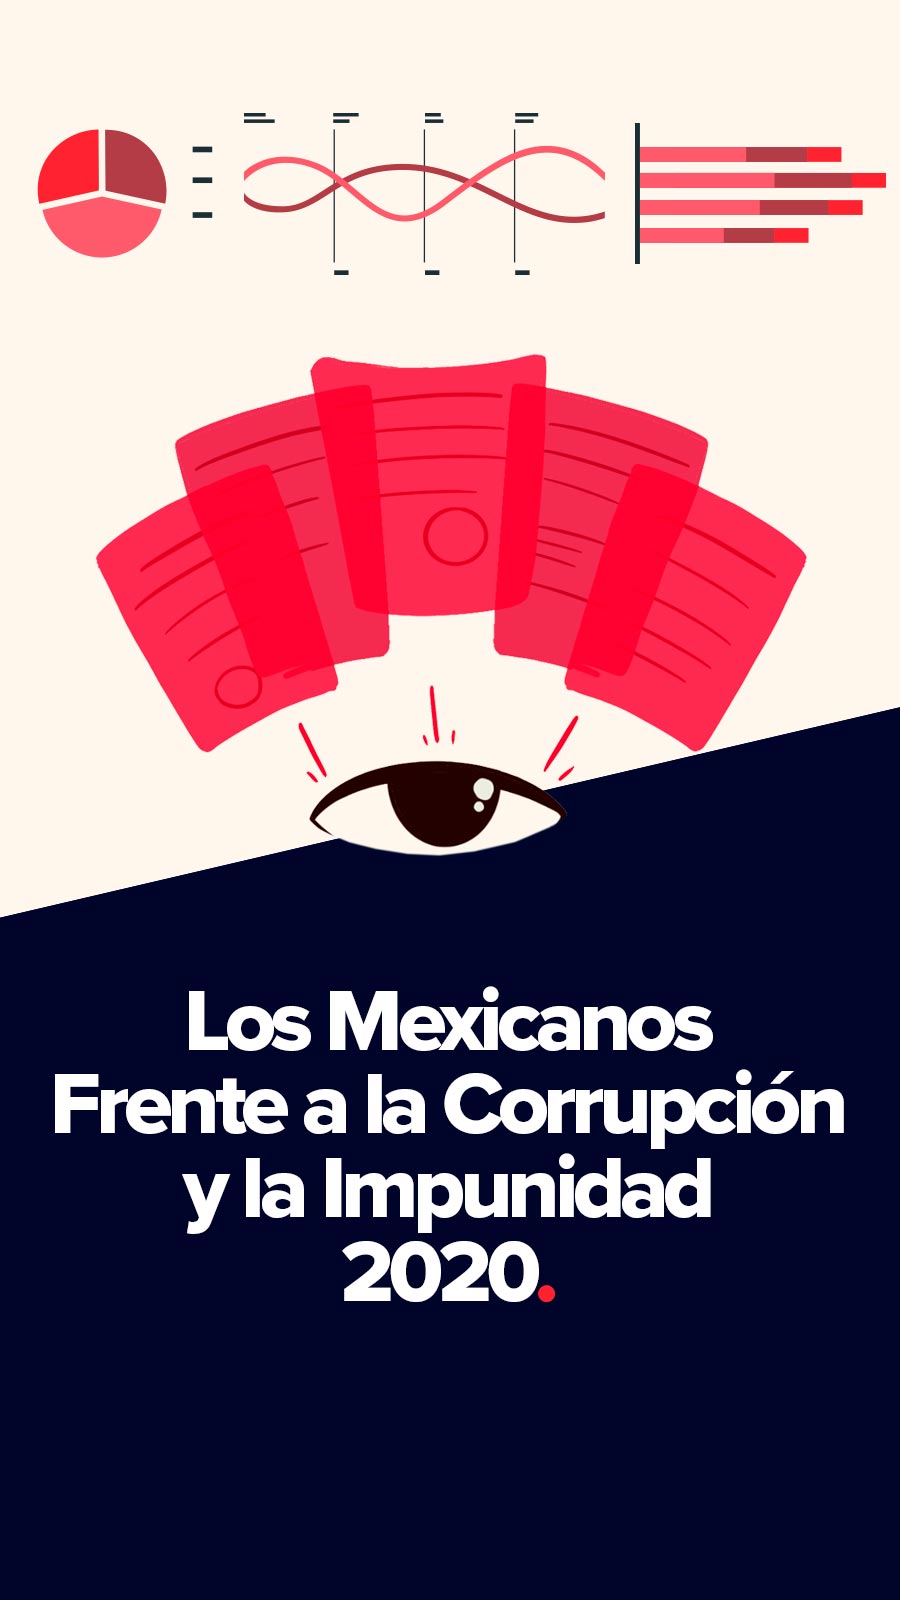 Los Mexicanos Frente a la Corrupción y la Impunidad 2020